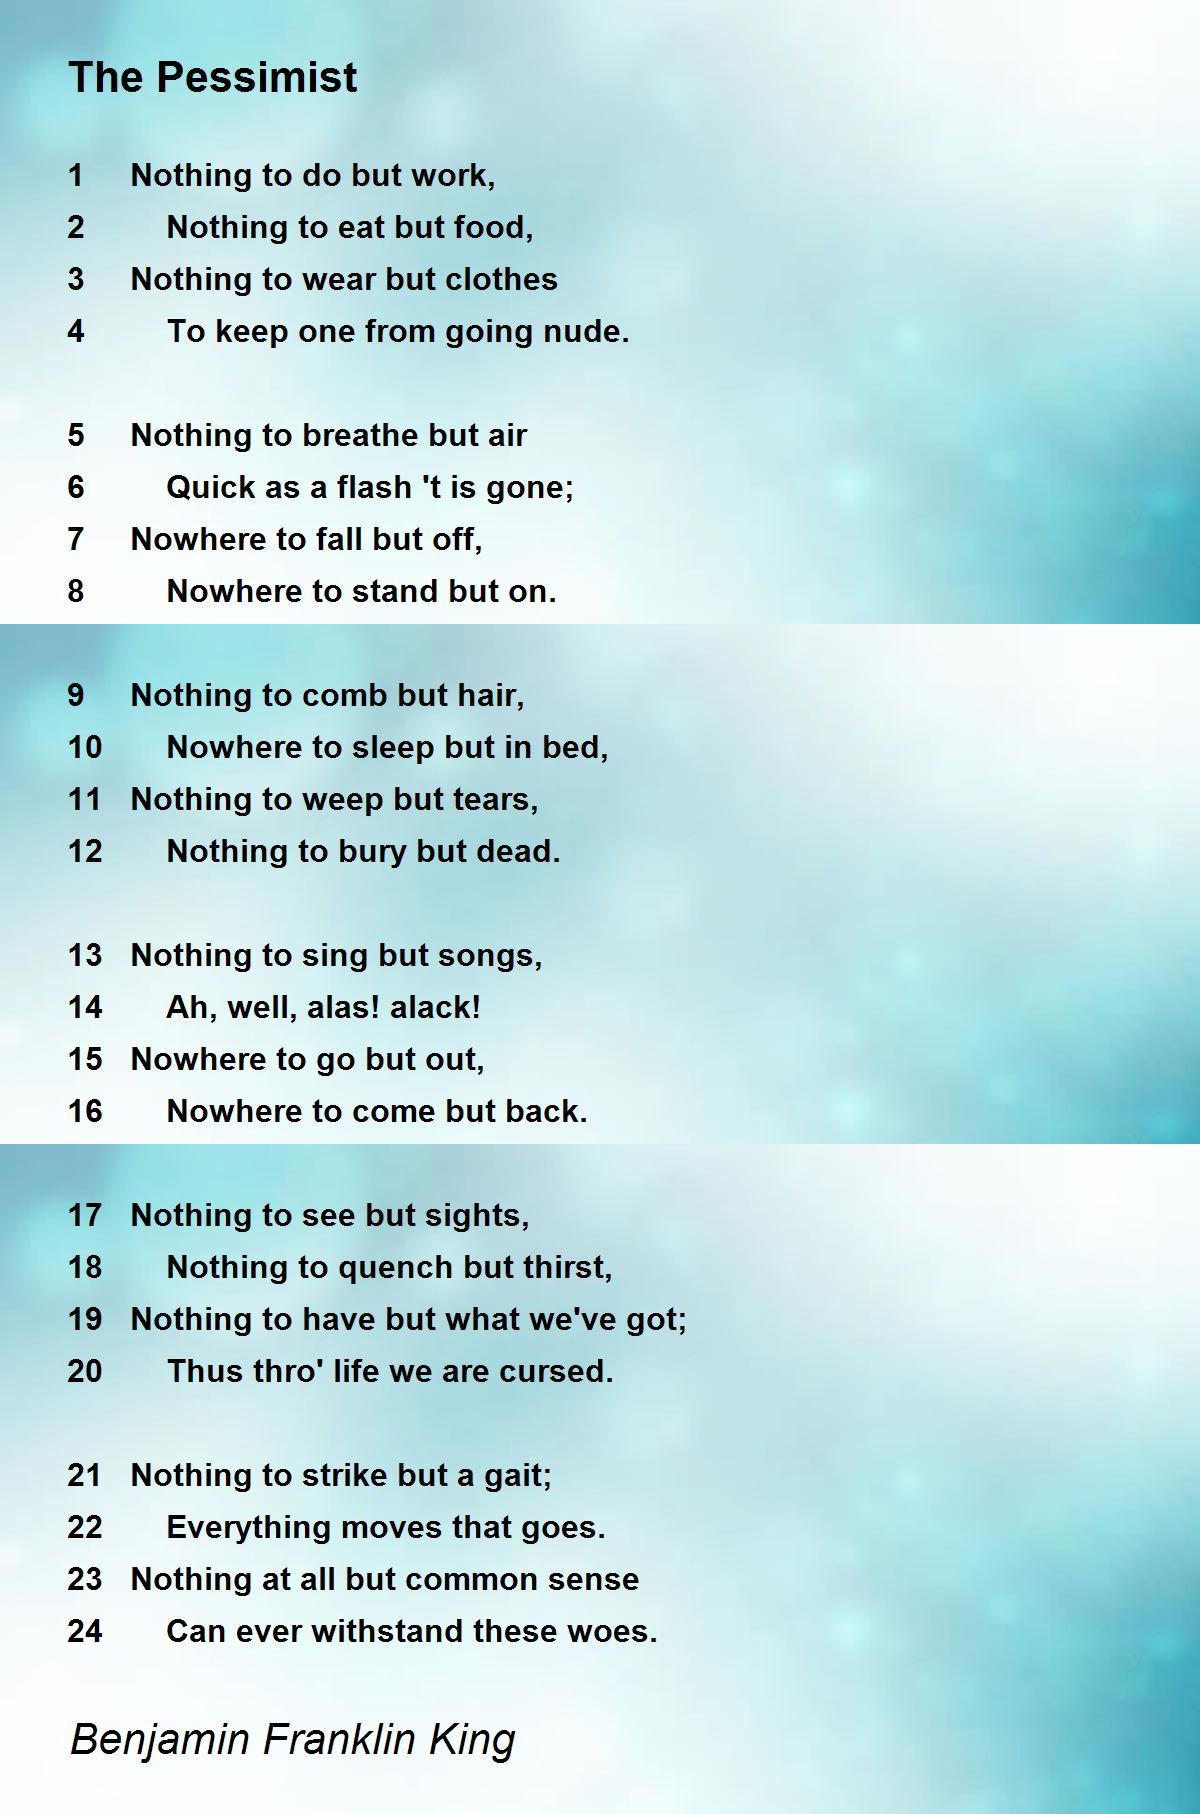 The Pessimist Poem by Benjamin Franklin King - Poem Hunter